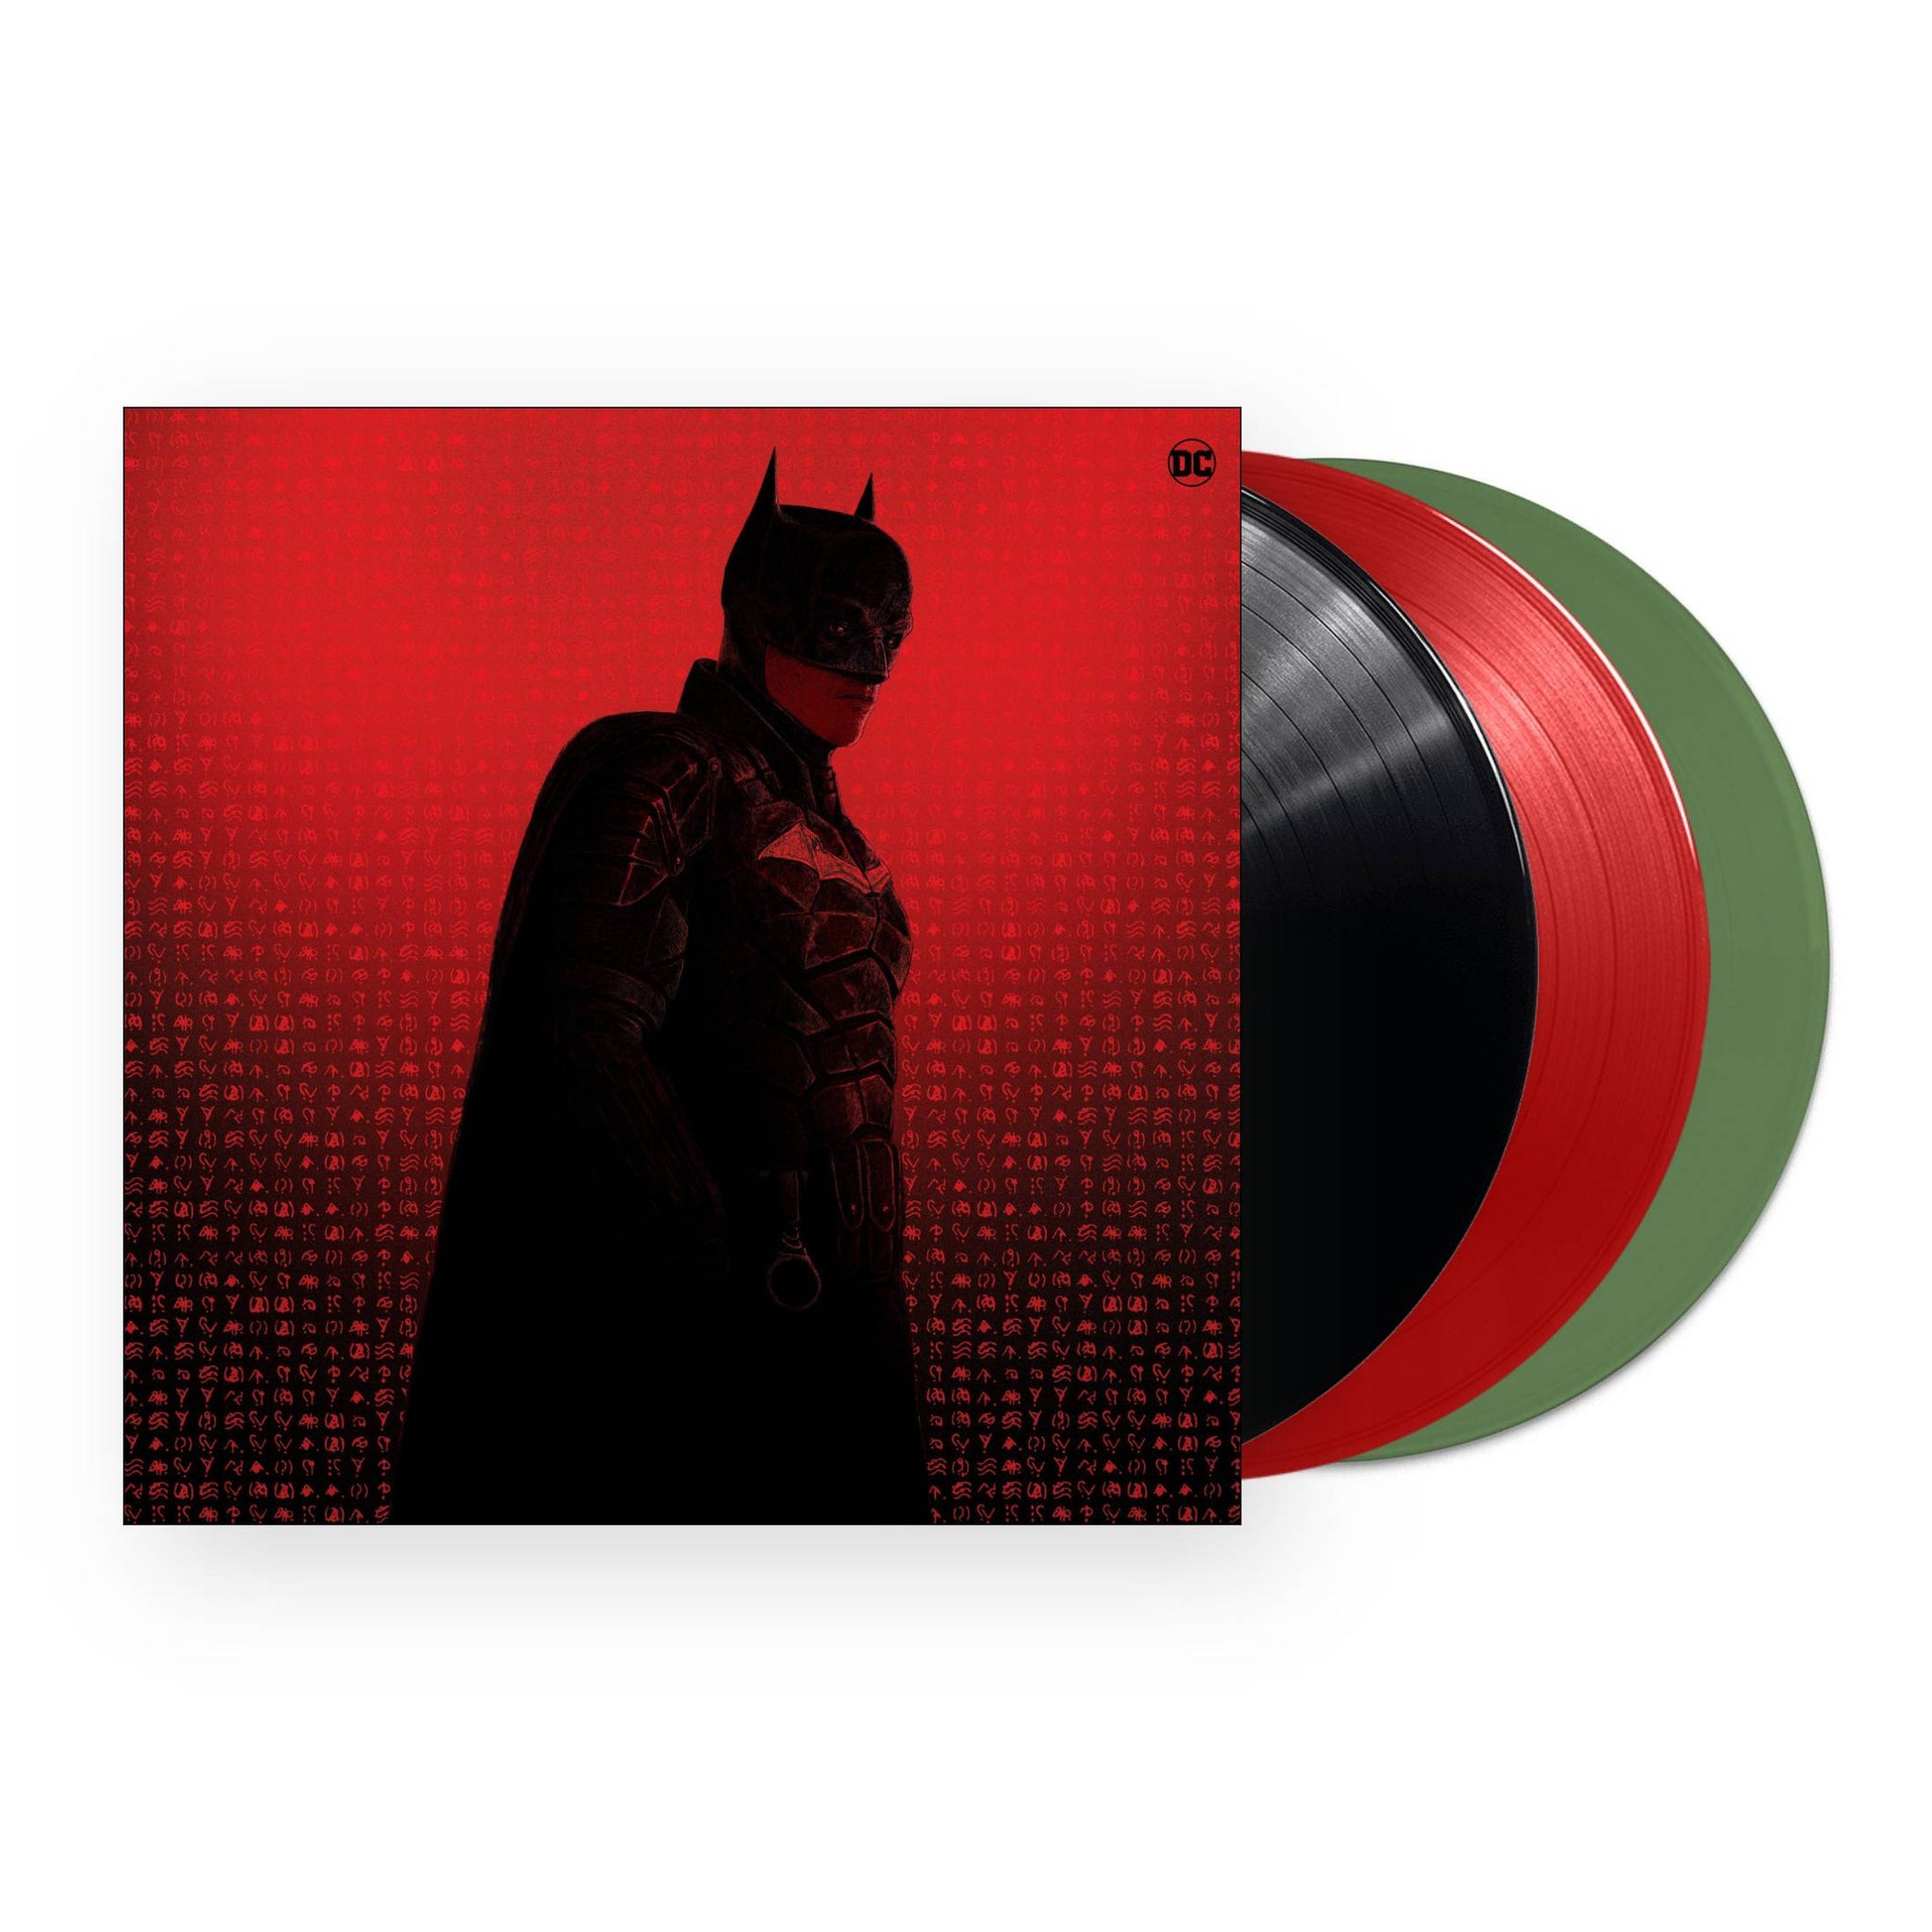 The Batman - Original Motion Picture Soundtrack 3xLP (Solid Color Vinyl)